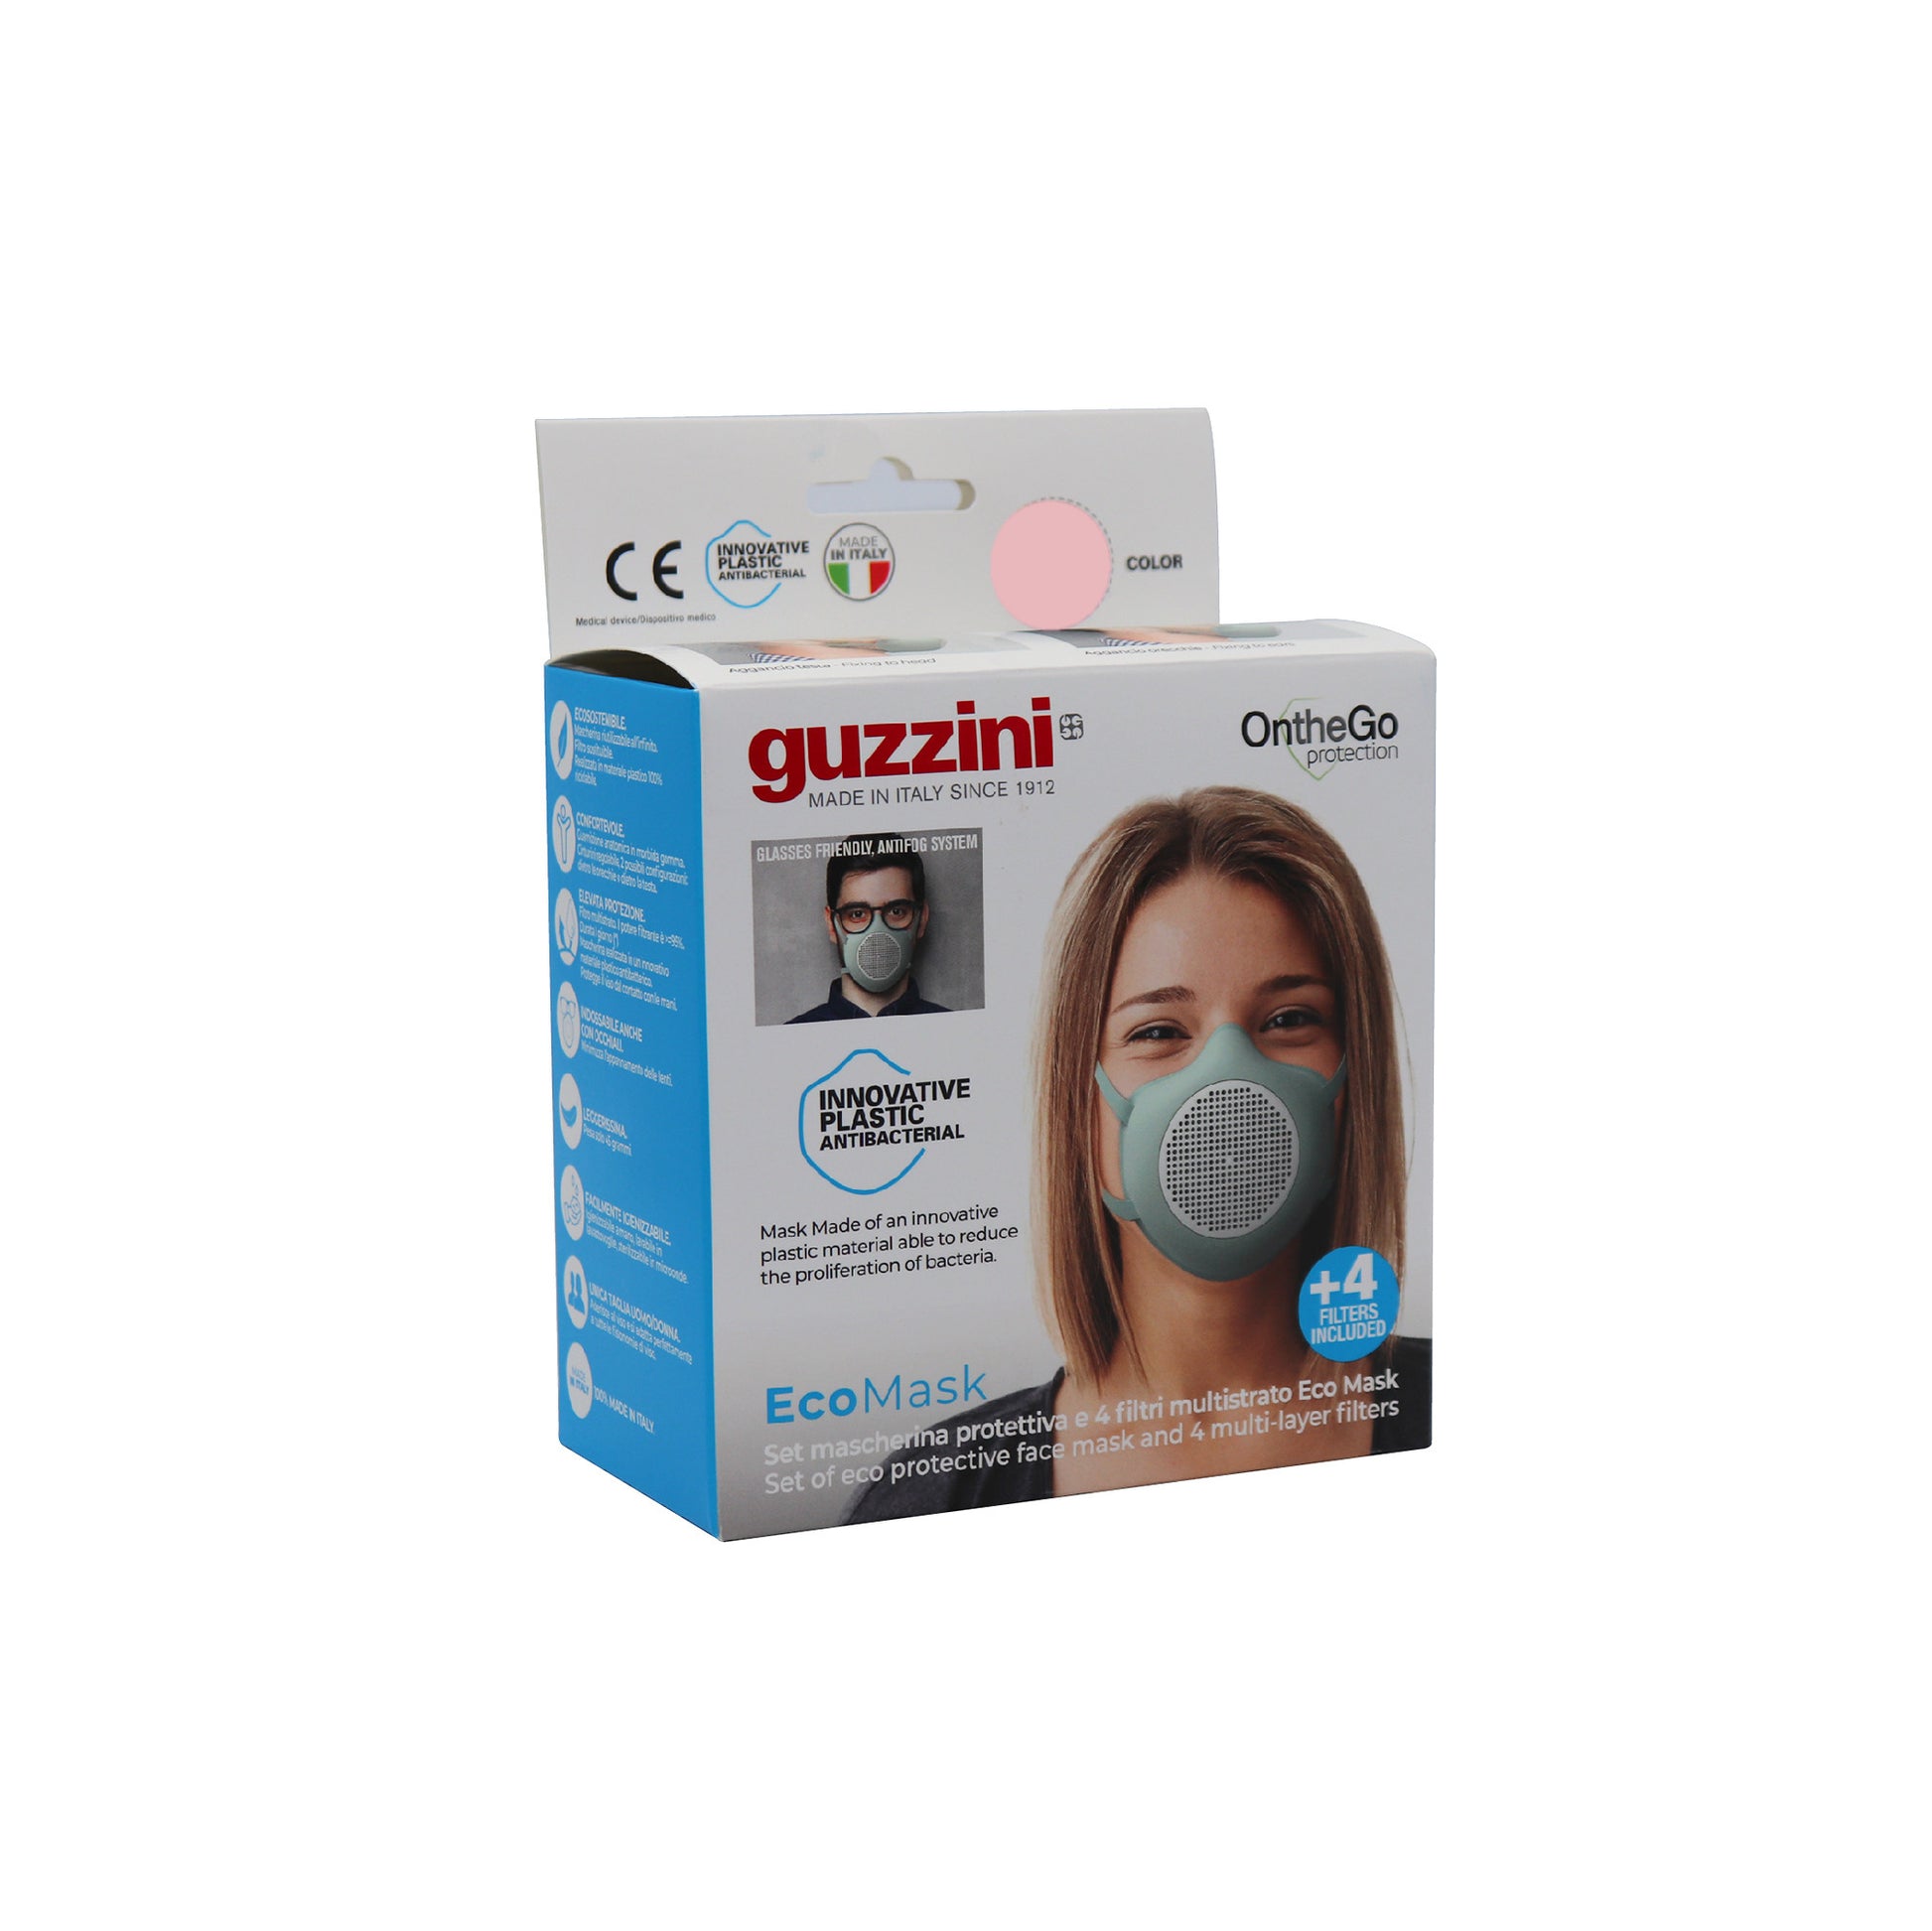 Masque + 4 filtres multicouches Eco Mask Jaune - Guzzini - Coeur Grenadine